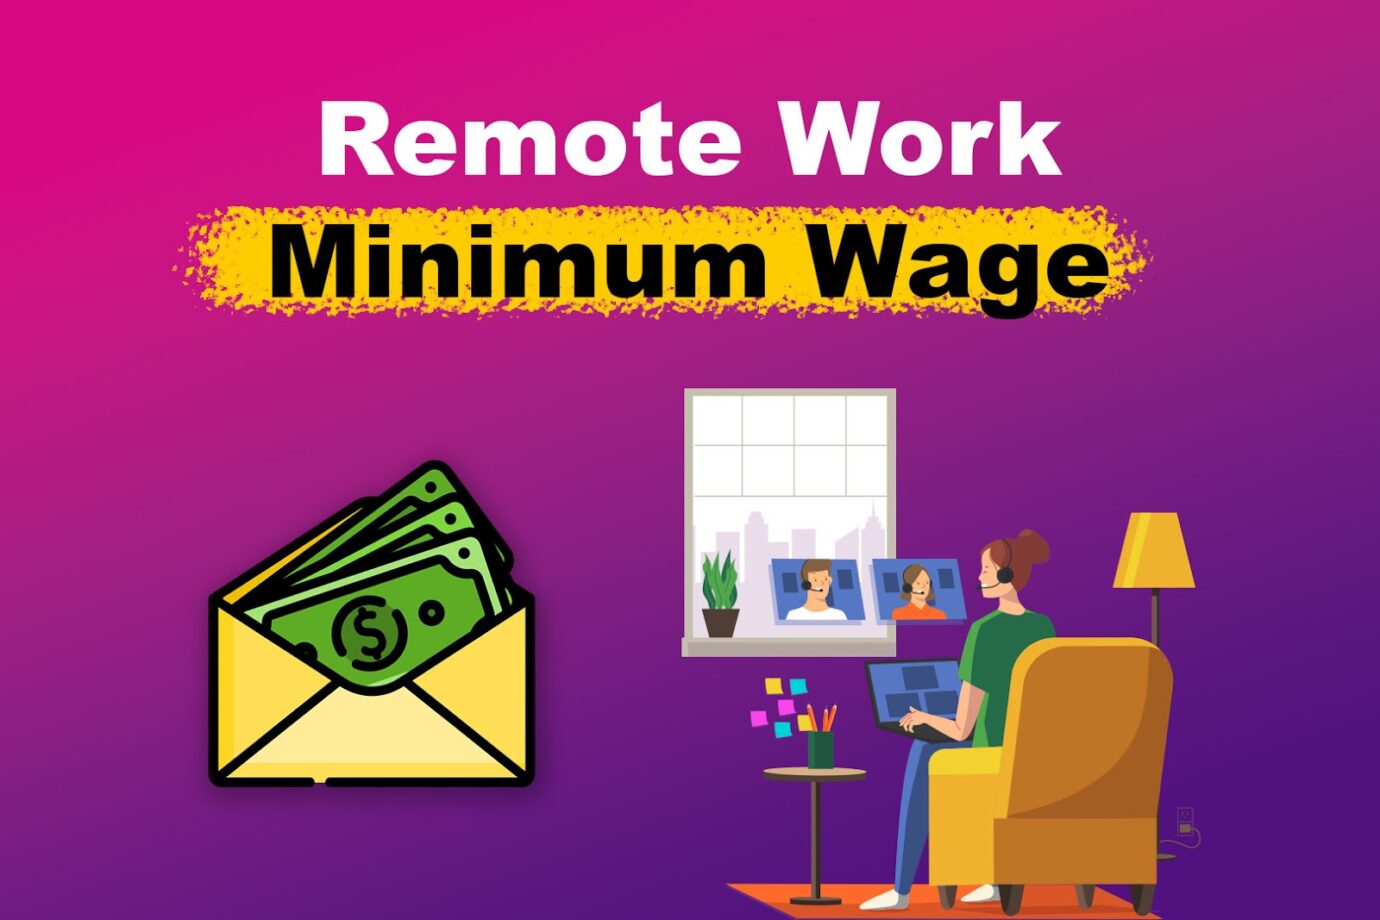 Remote Work Minimum Wage